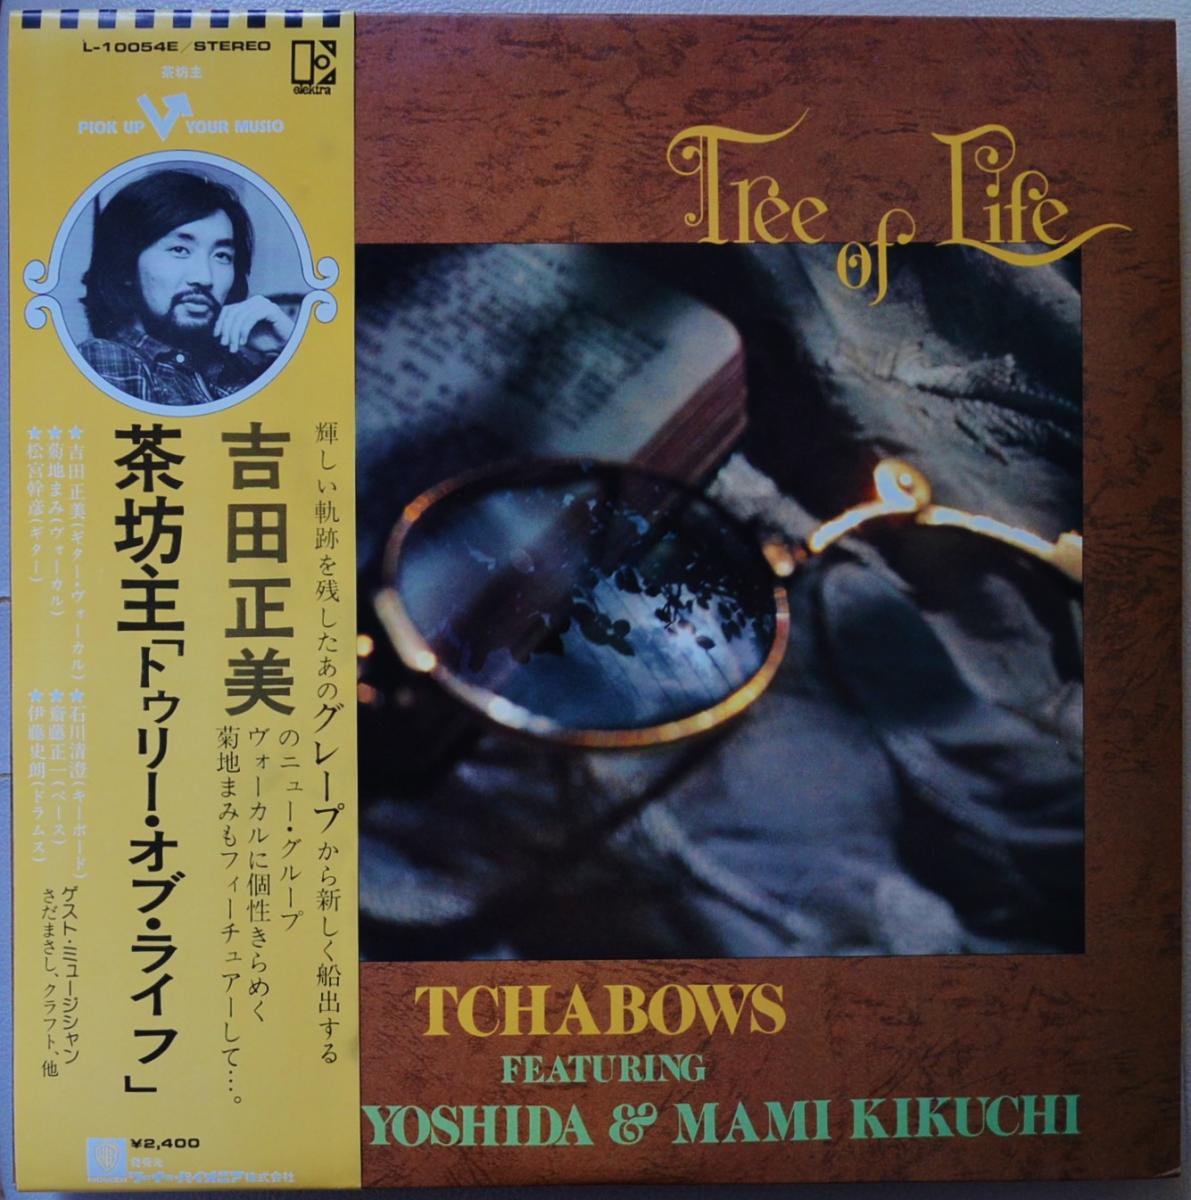 TCHABOWS FEATURING MASAMI YOSHIDA & MAMI KIKUCHI (吉田正美 & 茶 